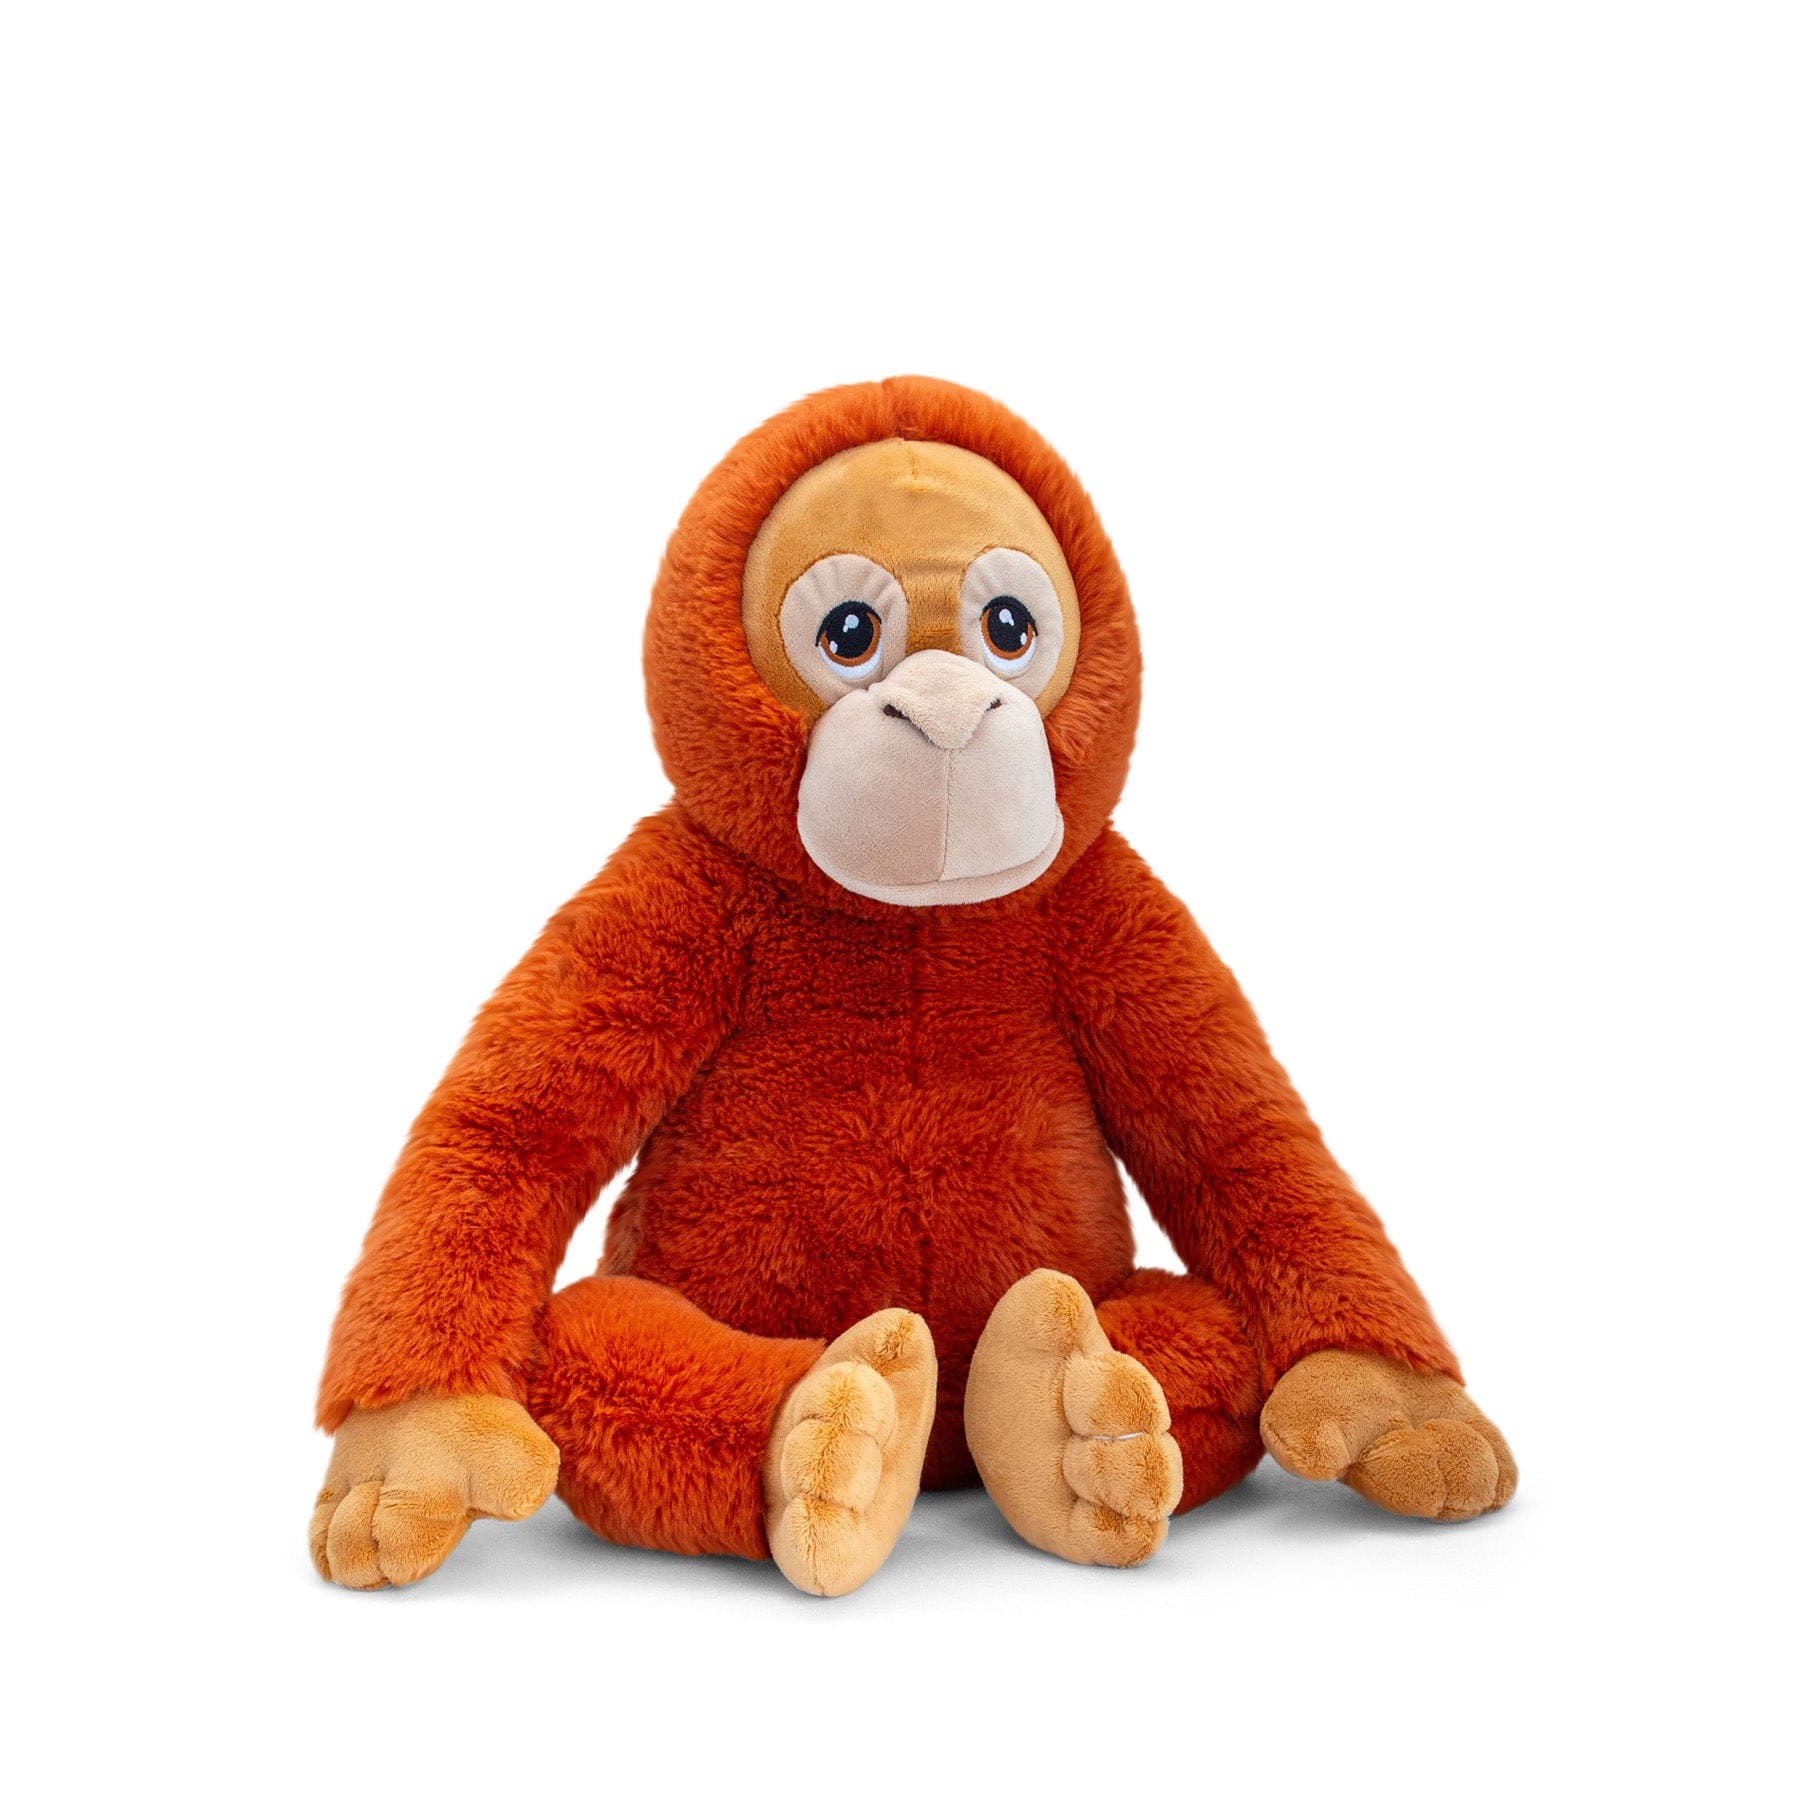 Orange plush monkey toy with sad eyes sitting isolated on white background.